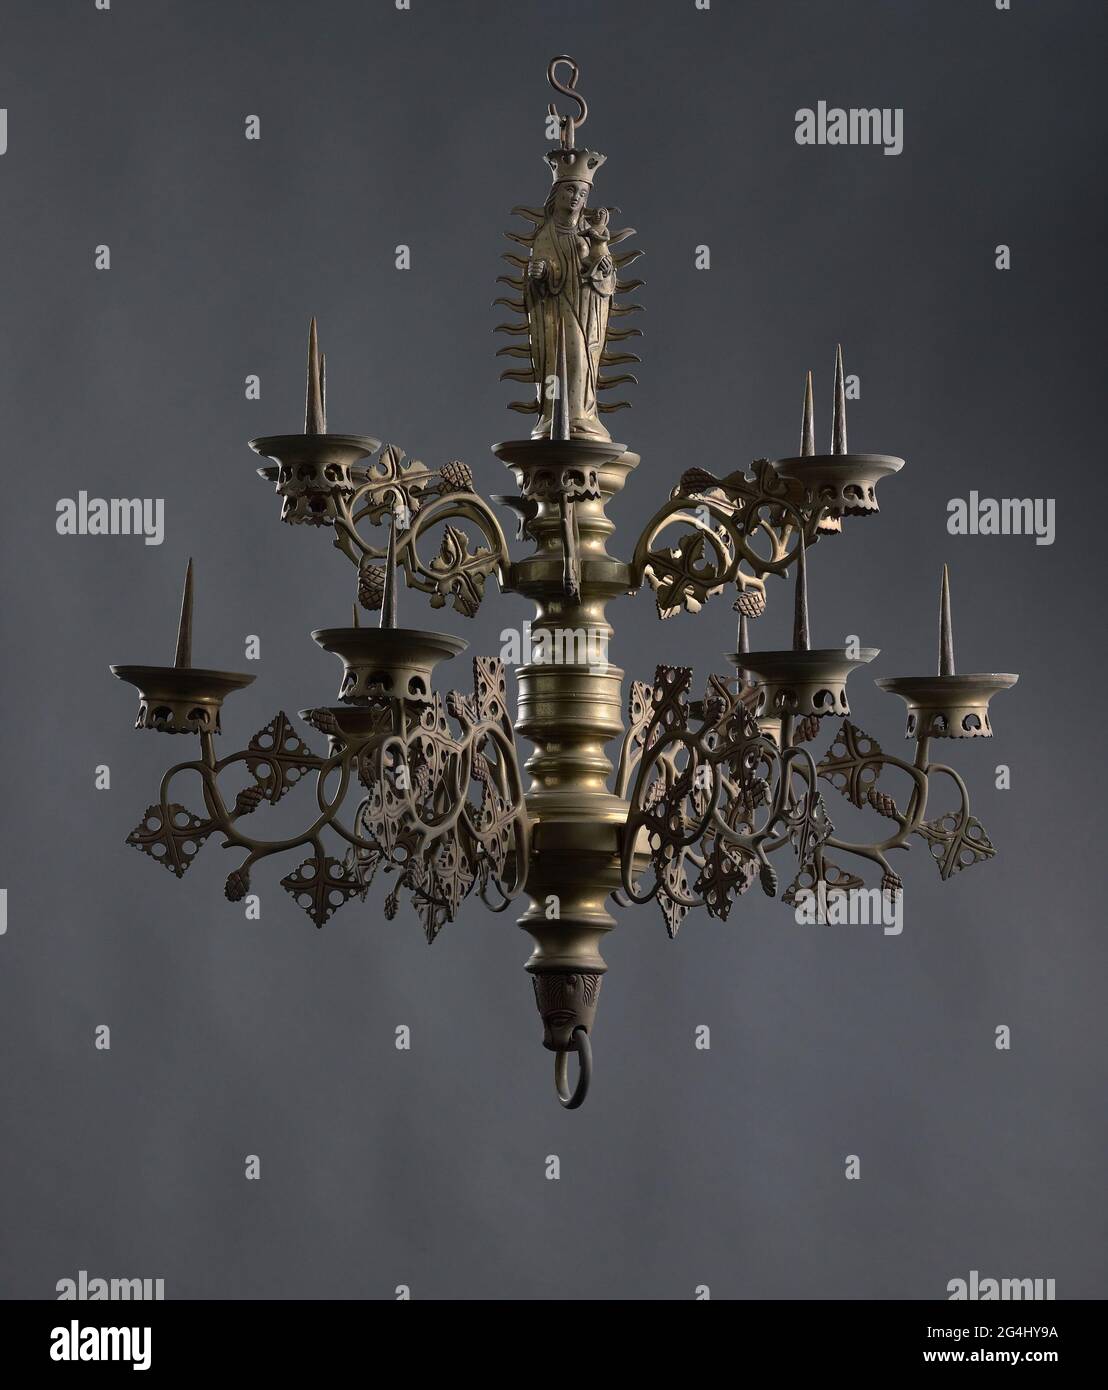 Brazo de vela perteneciente a una corona de vela de dos alturas con figura  de maría en la parte superior. El brazo se dobla dos veces y está decorado  con dos